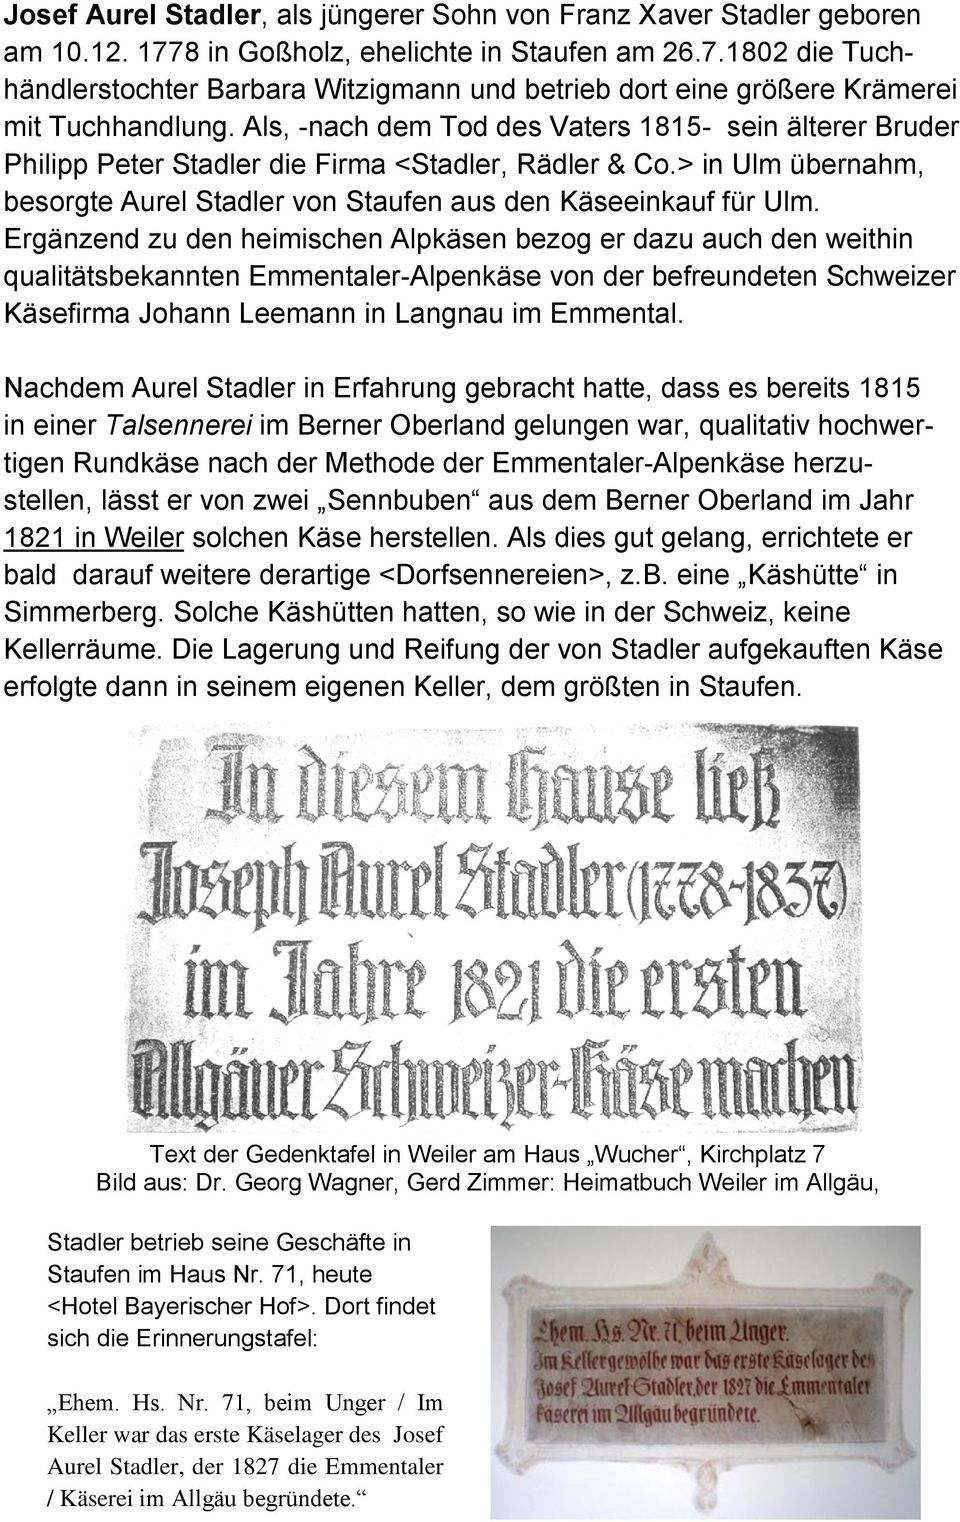 Ergänzend zu den heimischen Alpkäsen bezog er dazu auch den weithin qualitätsbekannten Emmentaler-Alpenkäse von der befreundeten Schweizer Käsefirma Johann Leemann in Langnau im Emmental.